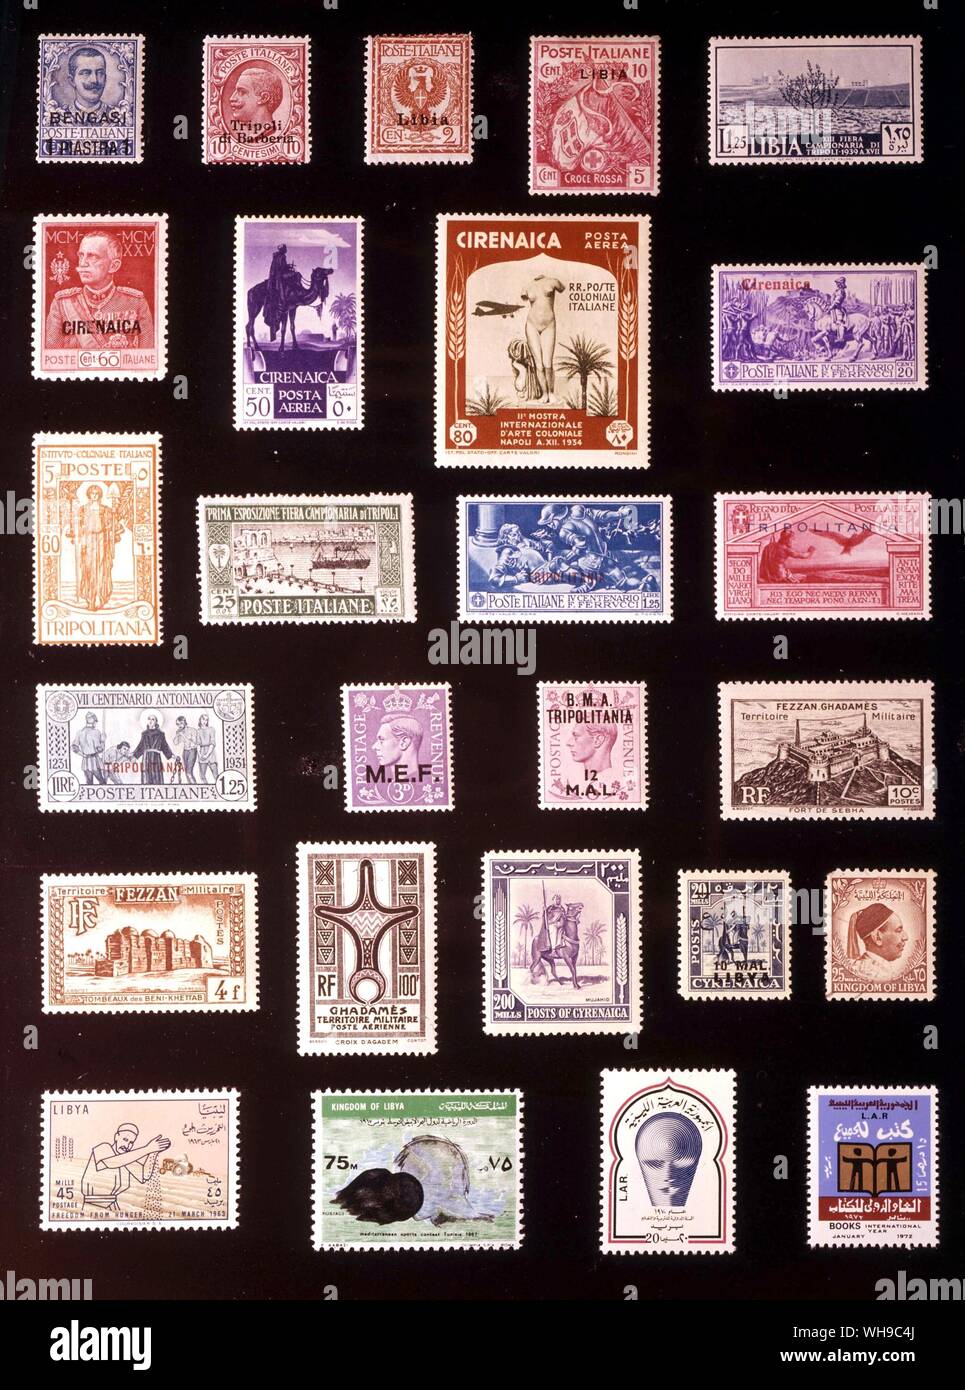 Afrika - Libyen: (von links nach rechts) 1. Bengasi, 1 Piastre 1911, 2. Tripoli, 10 Centesimi 1909, 3. Libyen, 2 Centesimi, 1912, 4. Libyen, 10 + 5 Centesimi, 1915, 5. Libyen, 1,25 Lire, 1939, 6. Cyrenaic, 60 Centesimi, 1925, 7. Der cyrenaika, 50 Centesimi, 1932, 8. Der cyrenaika, 80 Centesimi, 1934, 9. Der cyrenaika, 20 Centesimi 1930, 10. Tripolitanien, 60 Centesimi 1926, 11. Tripolitanien, 25 Centesimi 1927, 12. Tripolitanien, 1,25 Lire, 1930, 13. Tripolitanien, 1 Lira, 1930, 14. Tripolitanien, 1,25 Lire, 1931, 15. Naher Osten Kräfte, 3 Pence 1943, 16. Tripolitanien, 12 M.A.L., 1948, 17. Fezzan und Ghadames, 10. Stockfoto